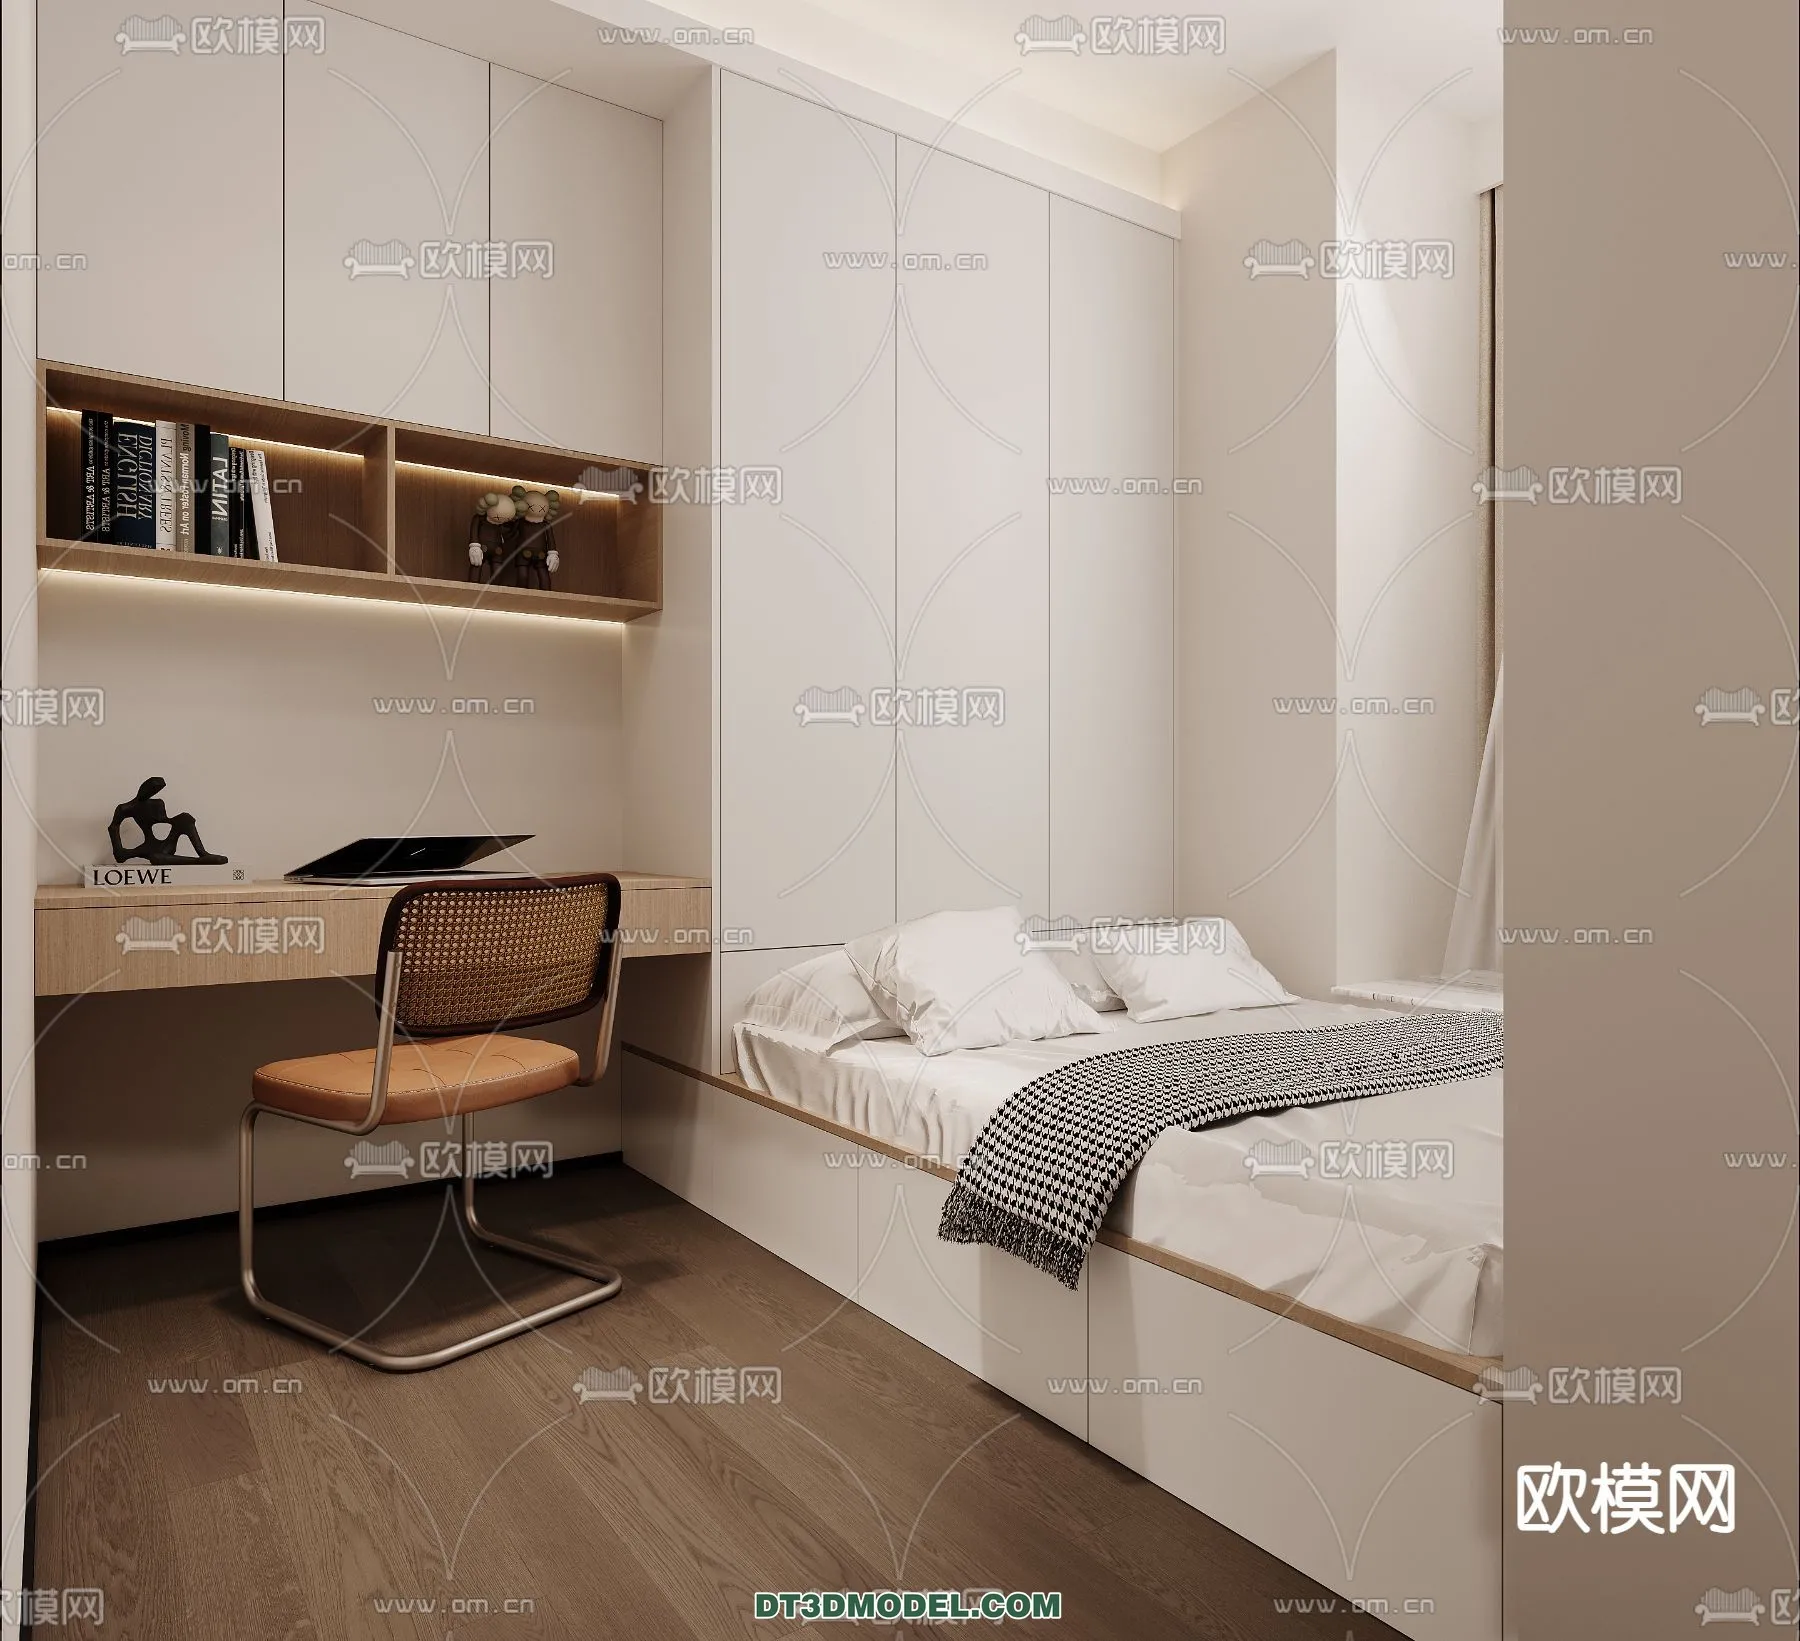 Tatami Bedroom – Japan Bedroom – 3D Scene – 026